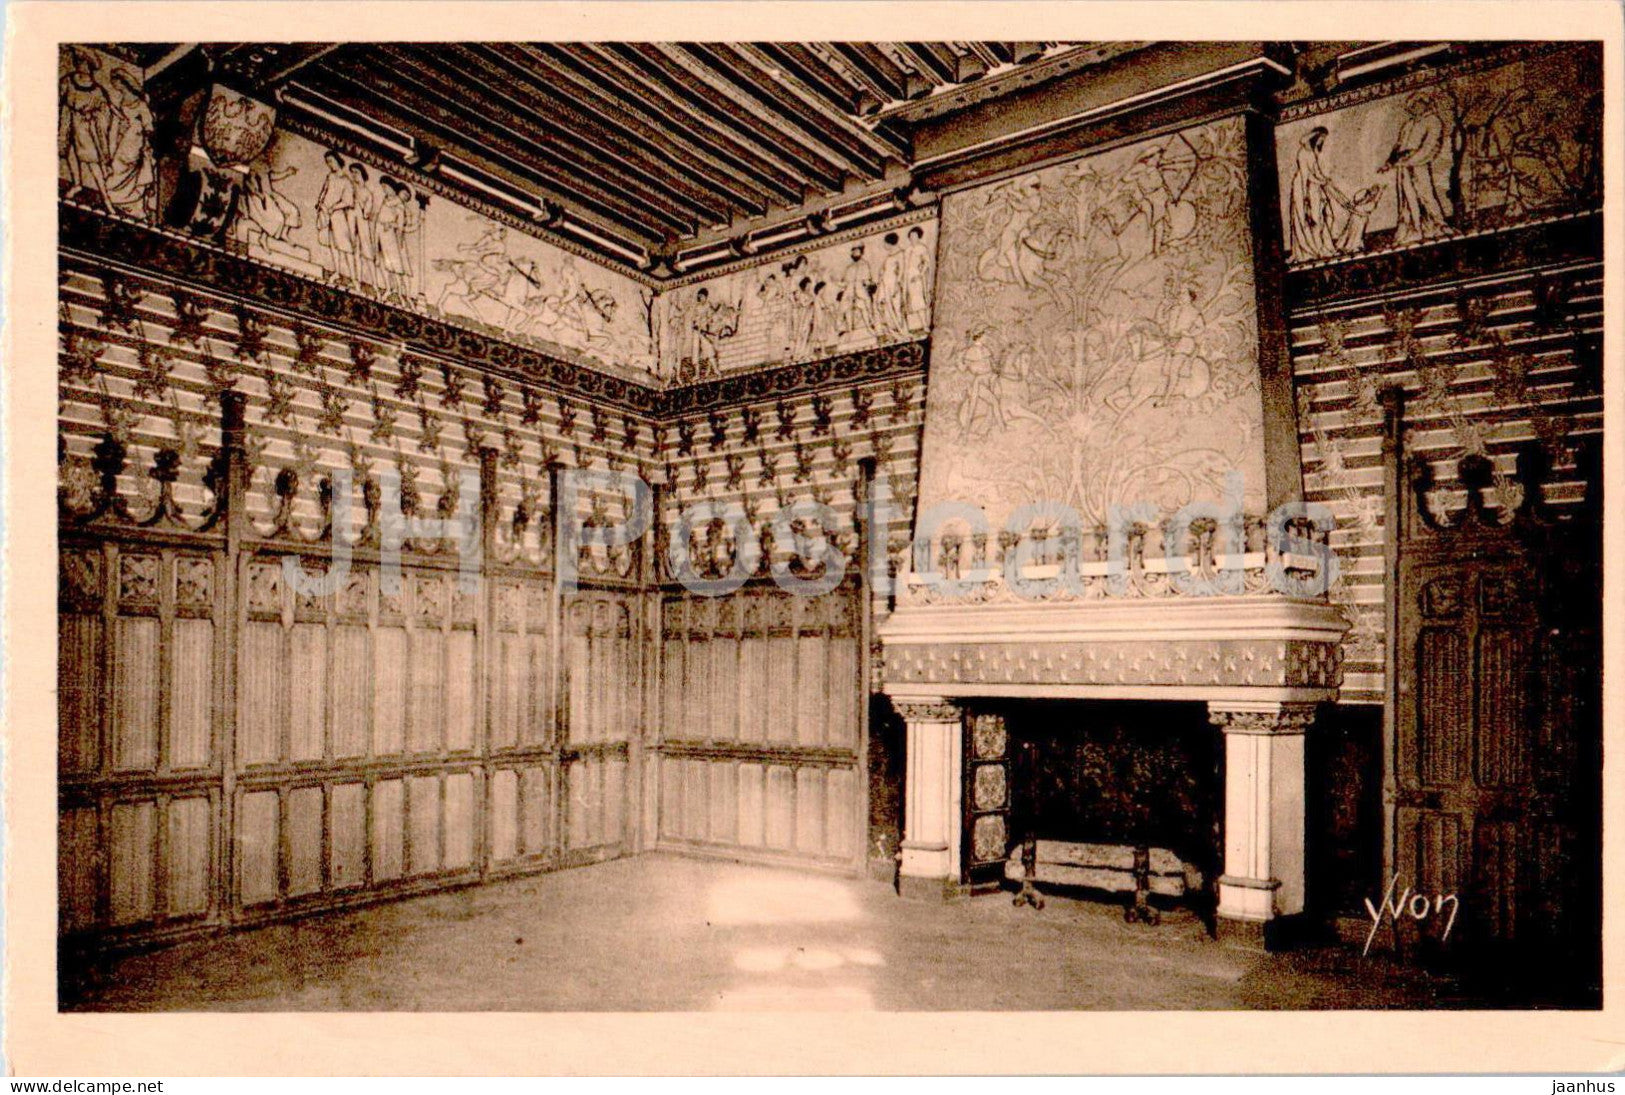 Chateau de Pierrefonds - La Chambre du Seigneur - castle - 12 - old postcard - France - unused - JH Postcards